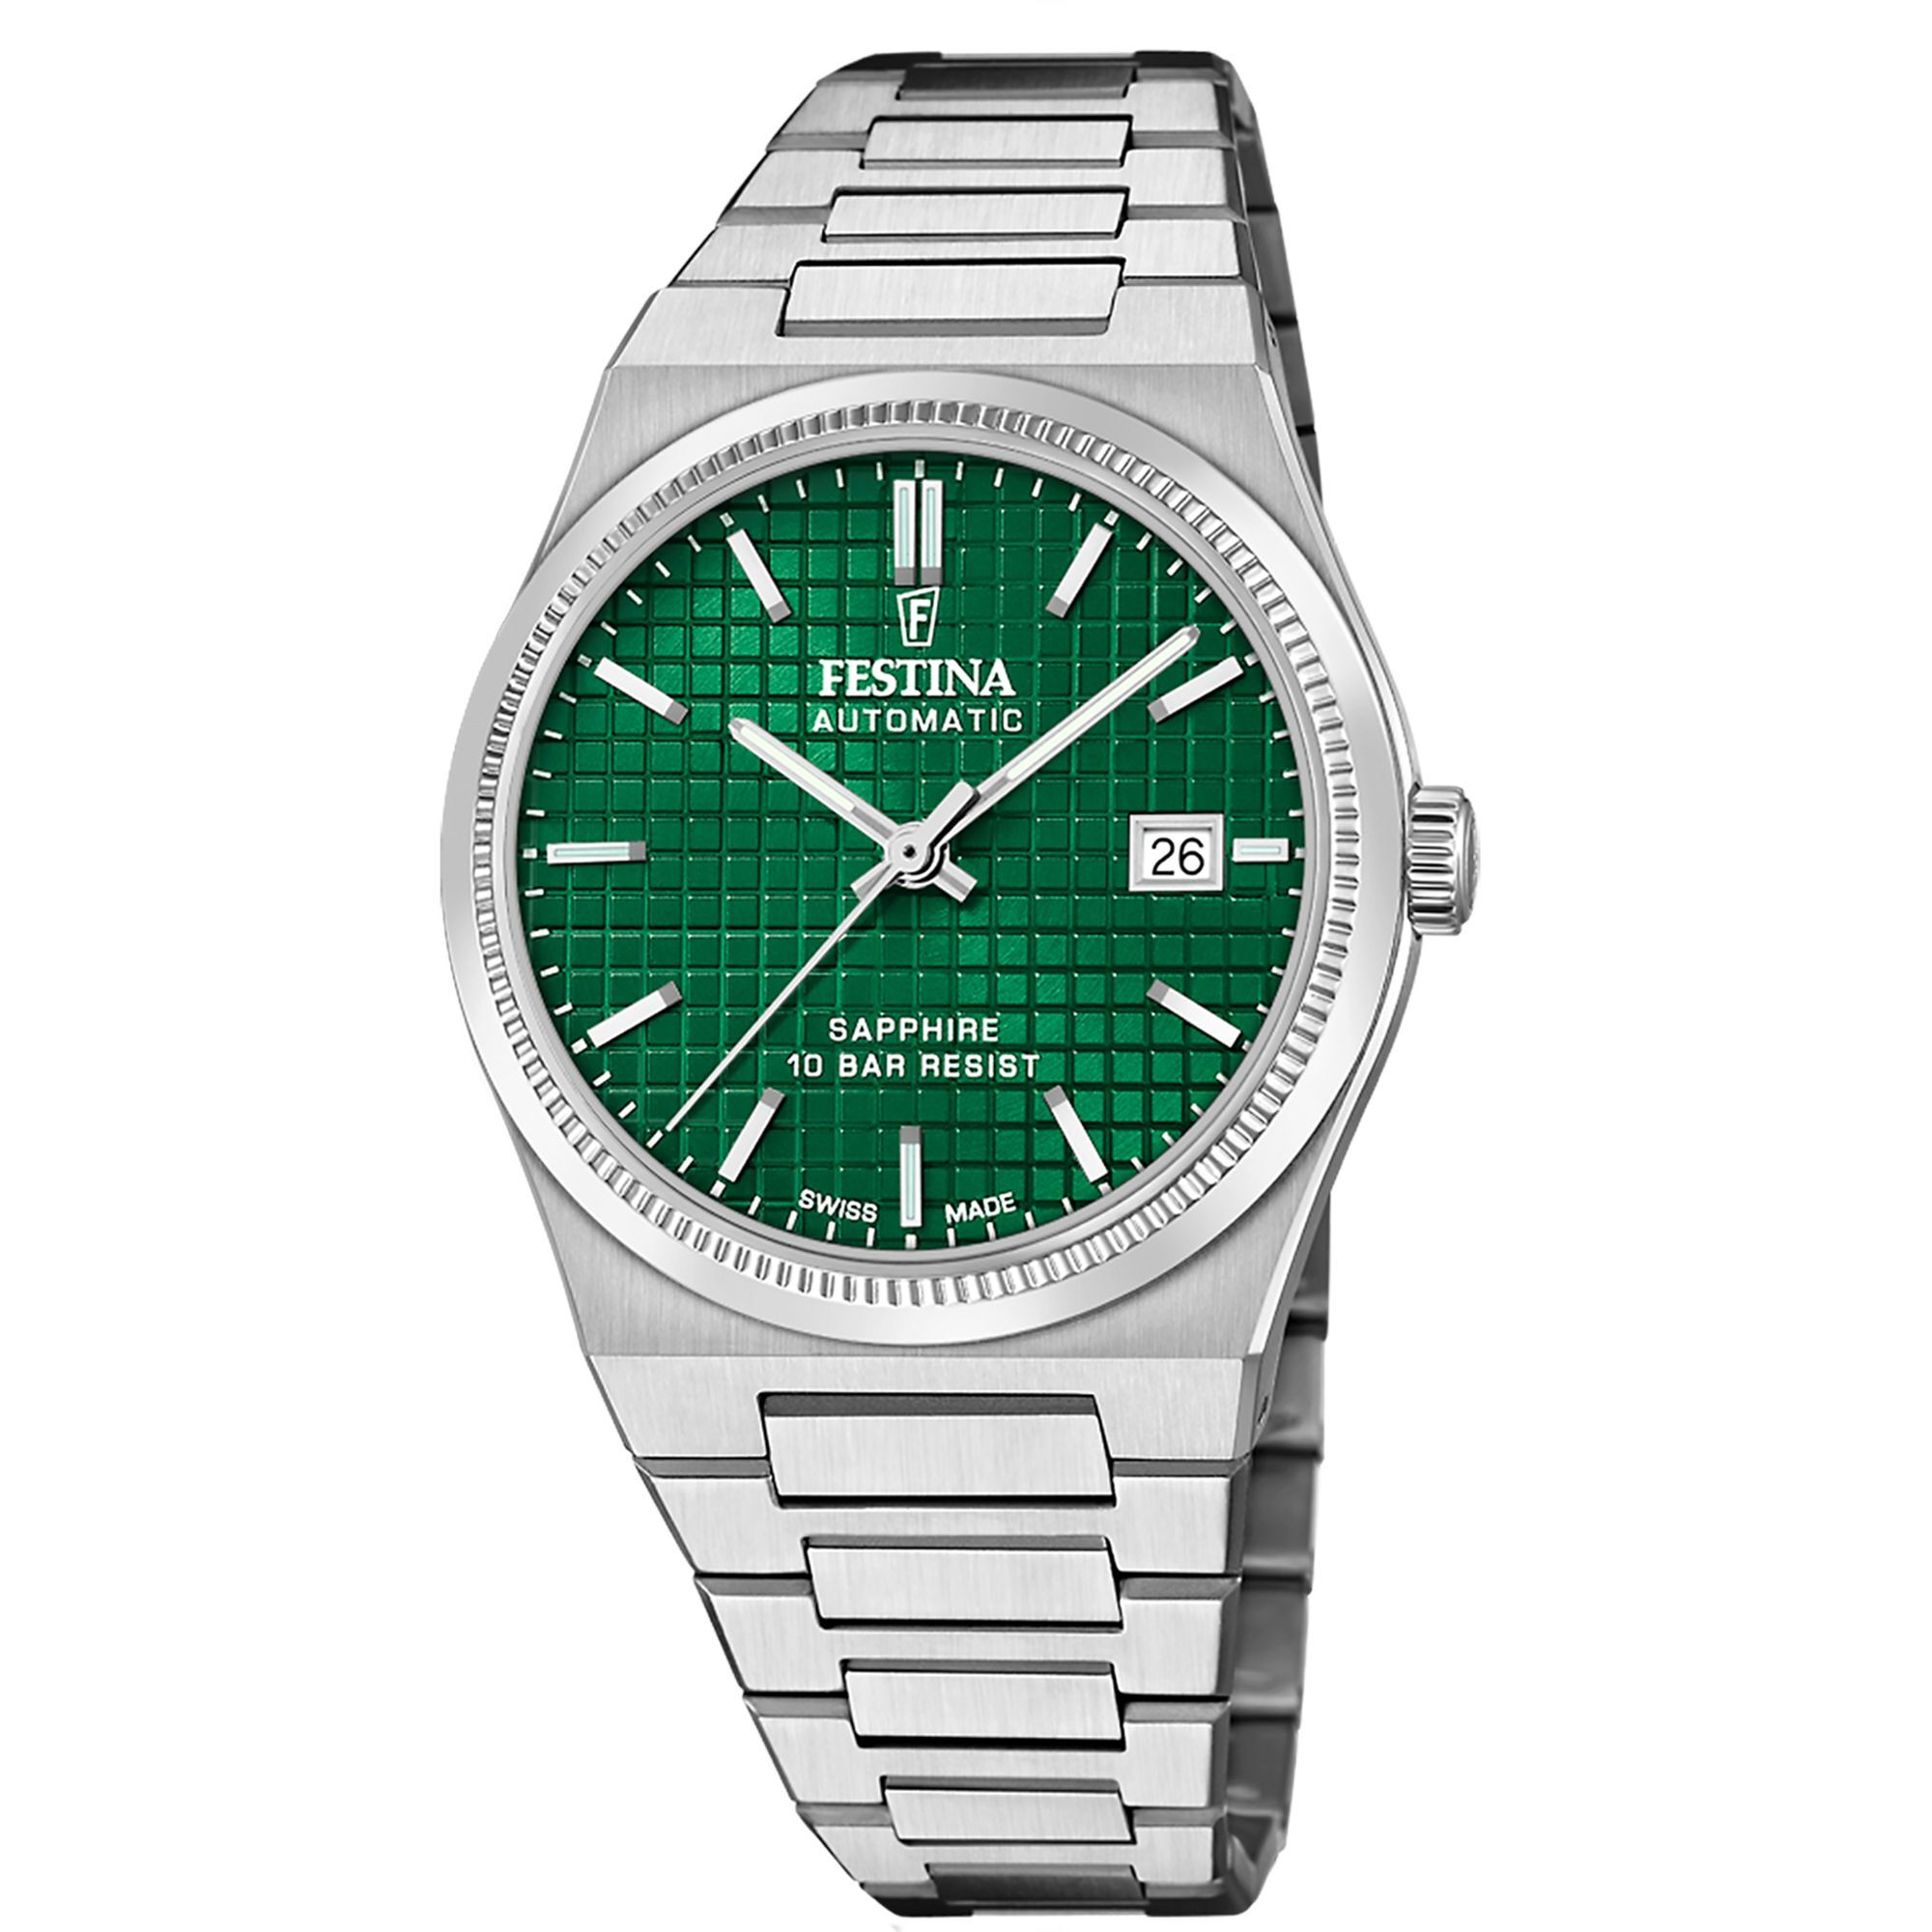 Festina Swiss Made 40mm My Swiss Time Green Dial Men's Watch F20028/3